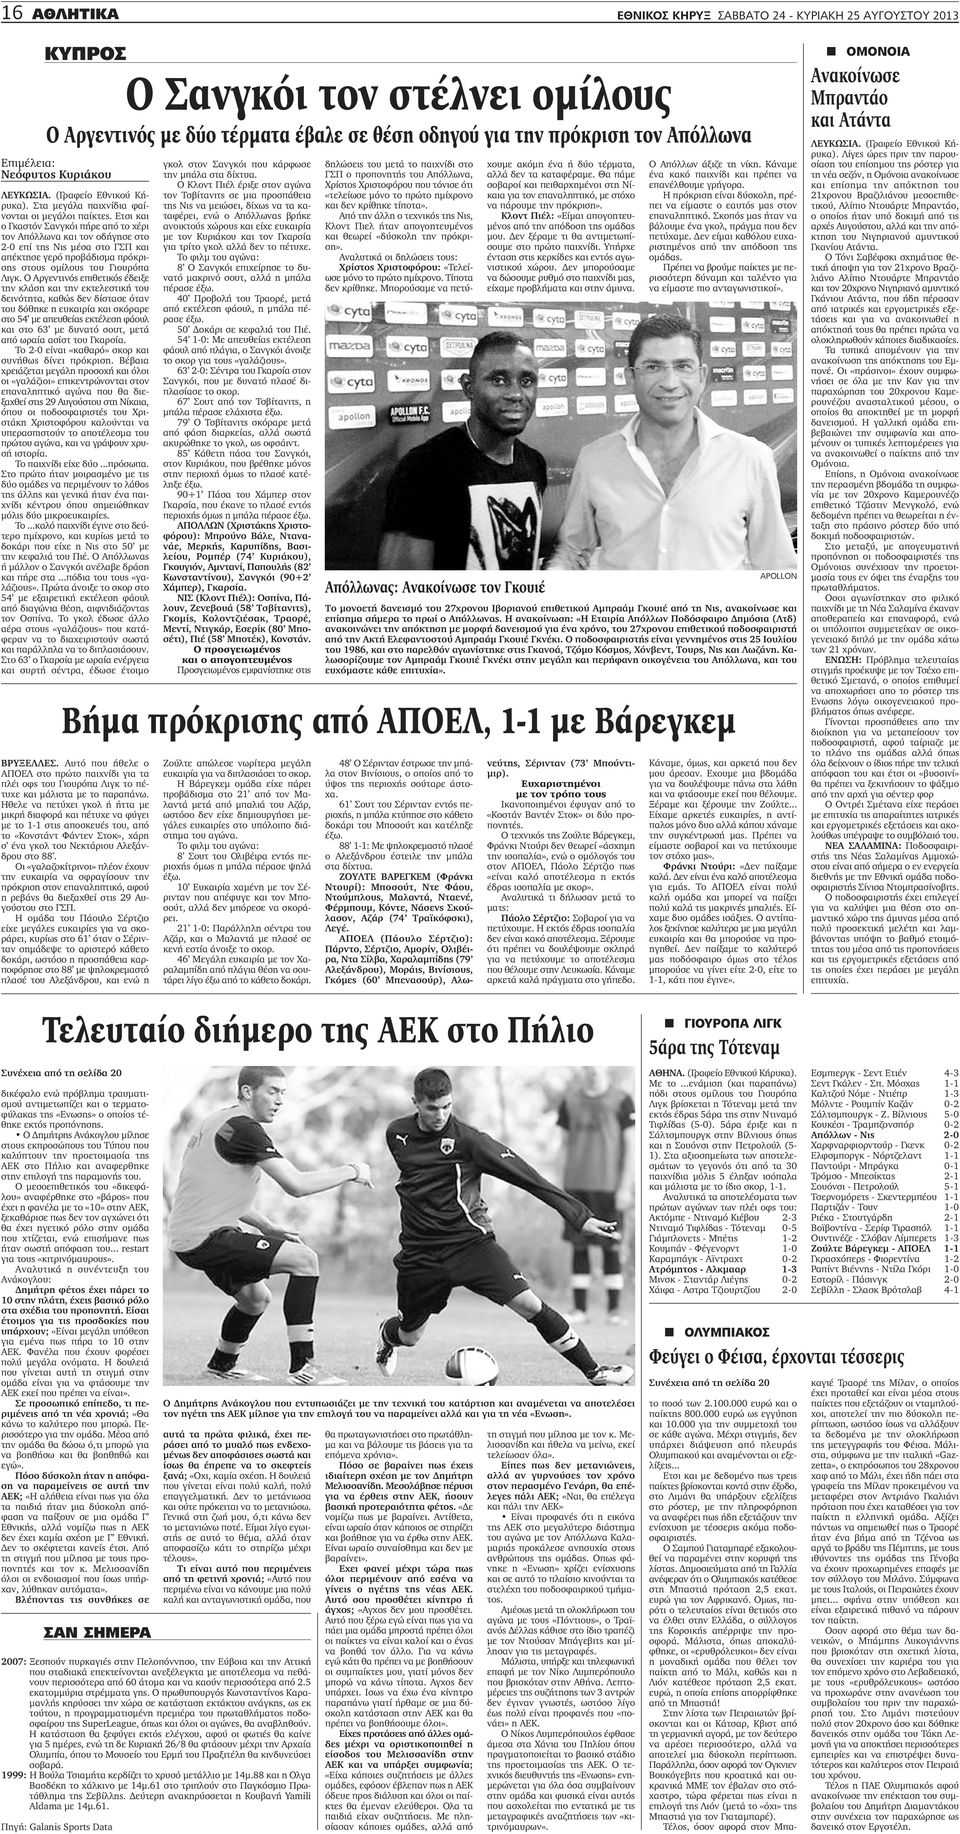 Ετσι και ο Γκαστόν Σανγκόι πήρε από το χέρι τον Απόλλωνα και τον οδήγησε στο 2-0 επί της Νις μέσα στο ΓΣΠ και απέκτησε γερό προβάδισμα πρόκρισης στους ομίλους του Γιουρόπα Λιγκ.